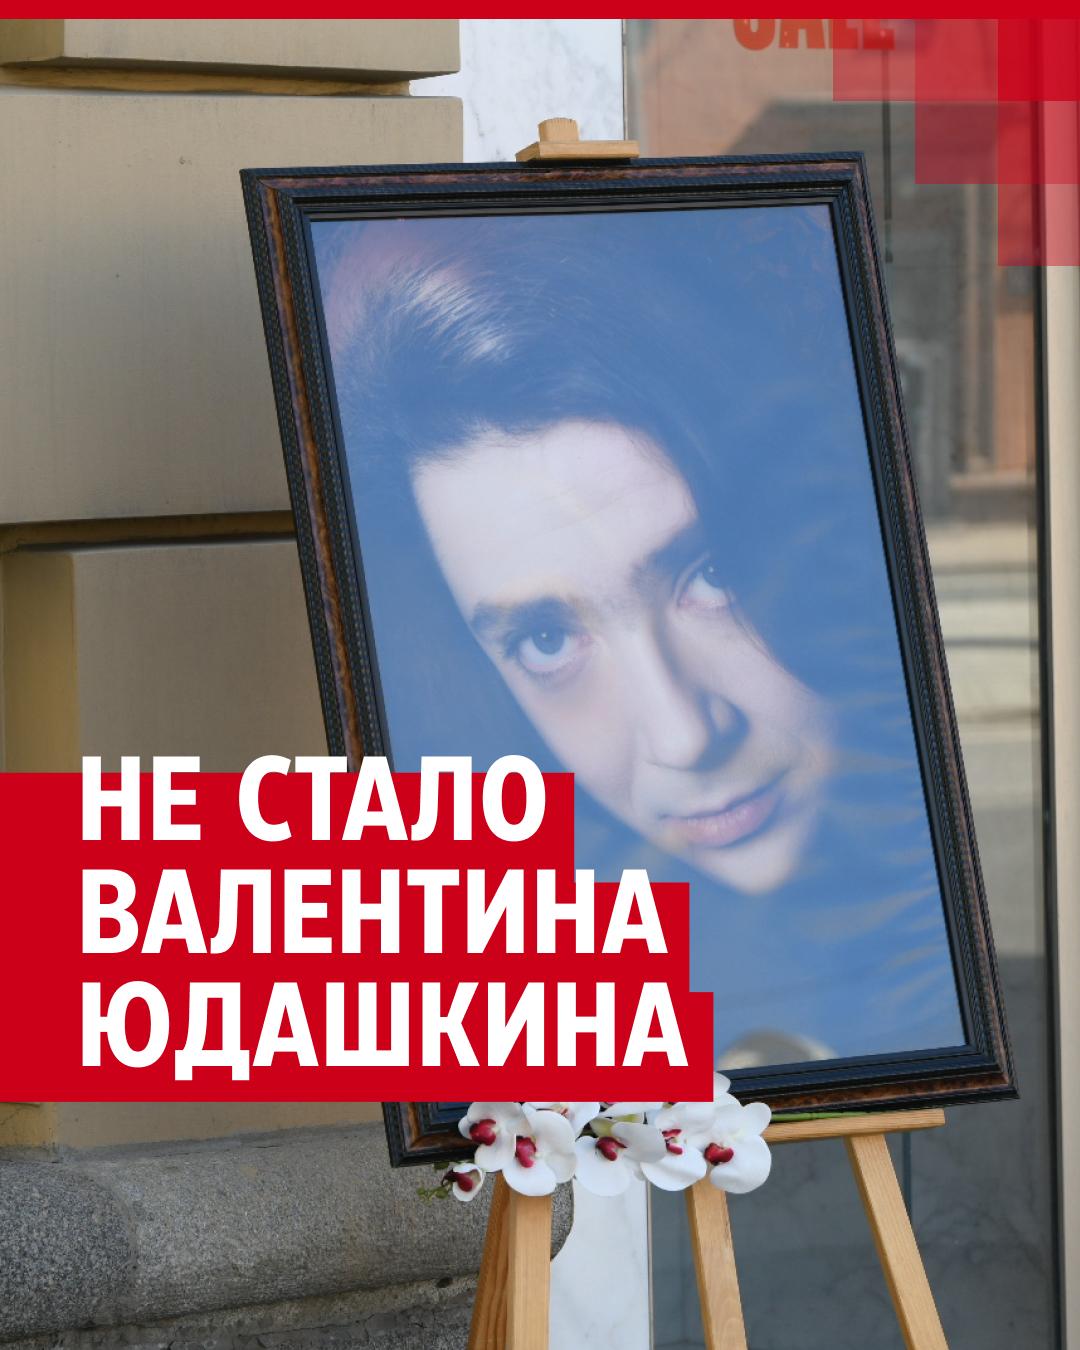 Через две недели после похорон Валентина Юдашкина его семью втянули в скандал